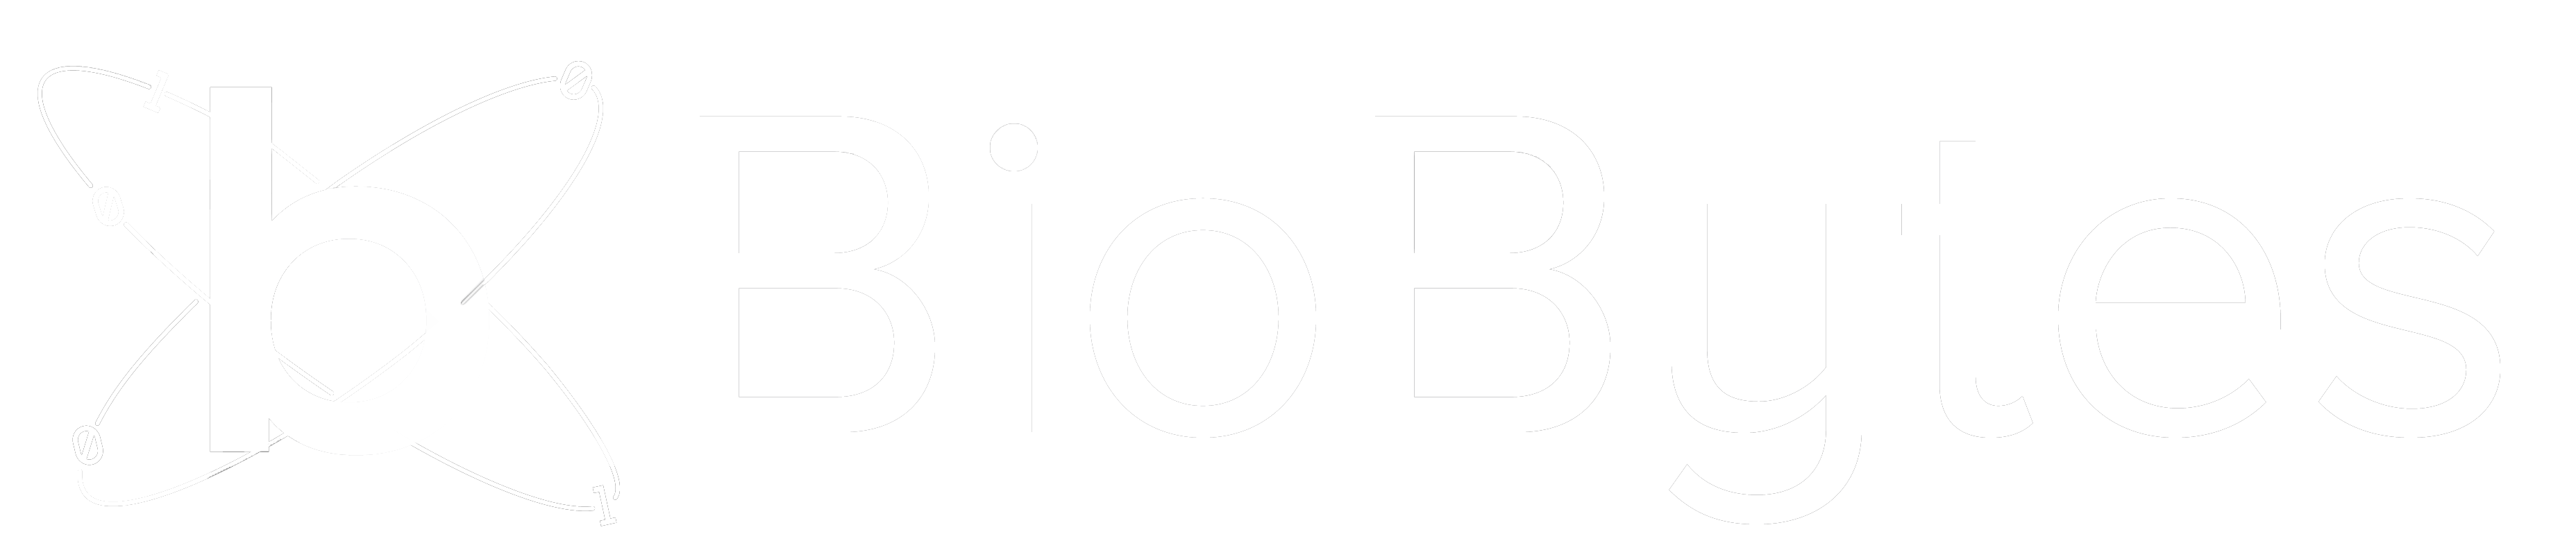 Biobytes White logo